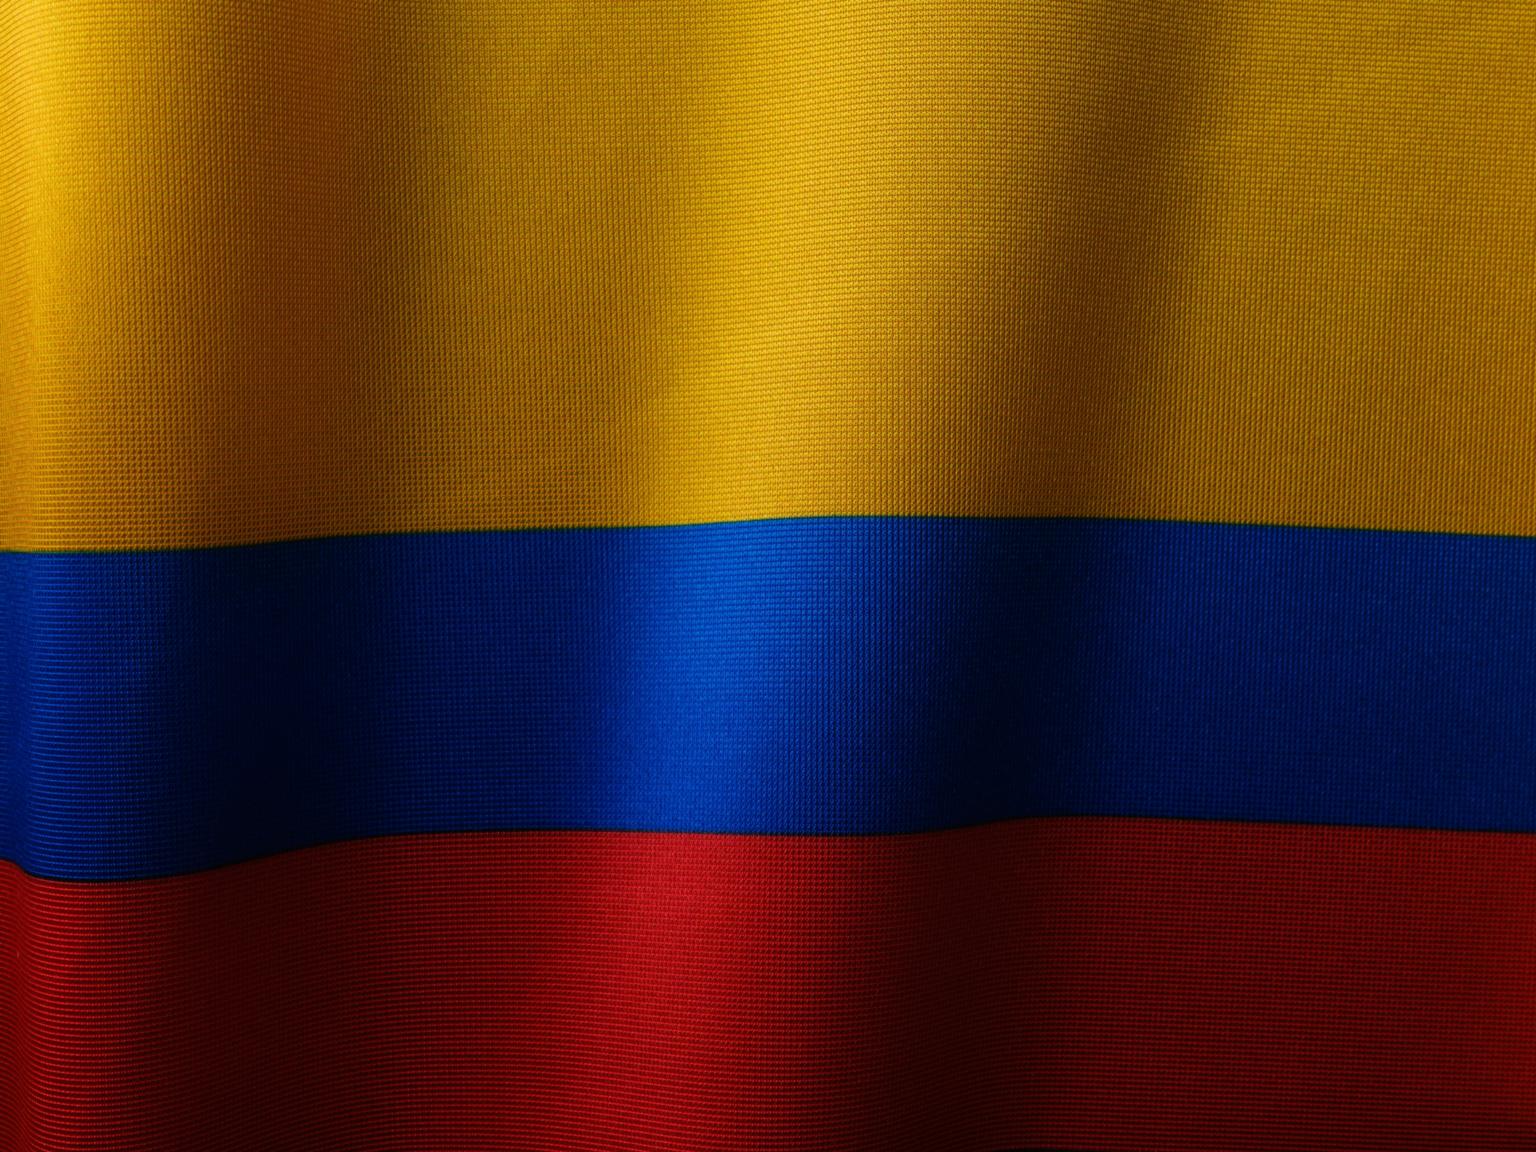 Kolumbien Flagge (c) Foto von engin akyurt auf Unsplash